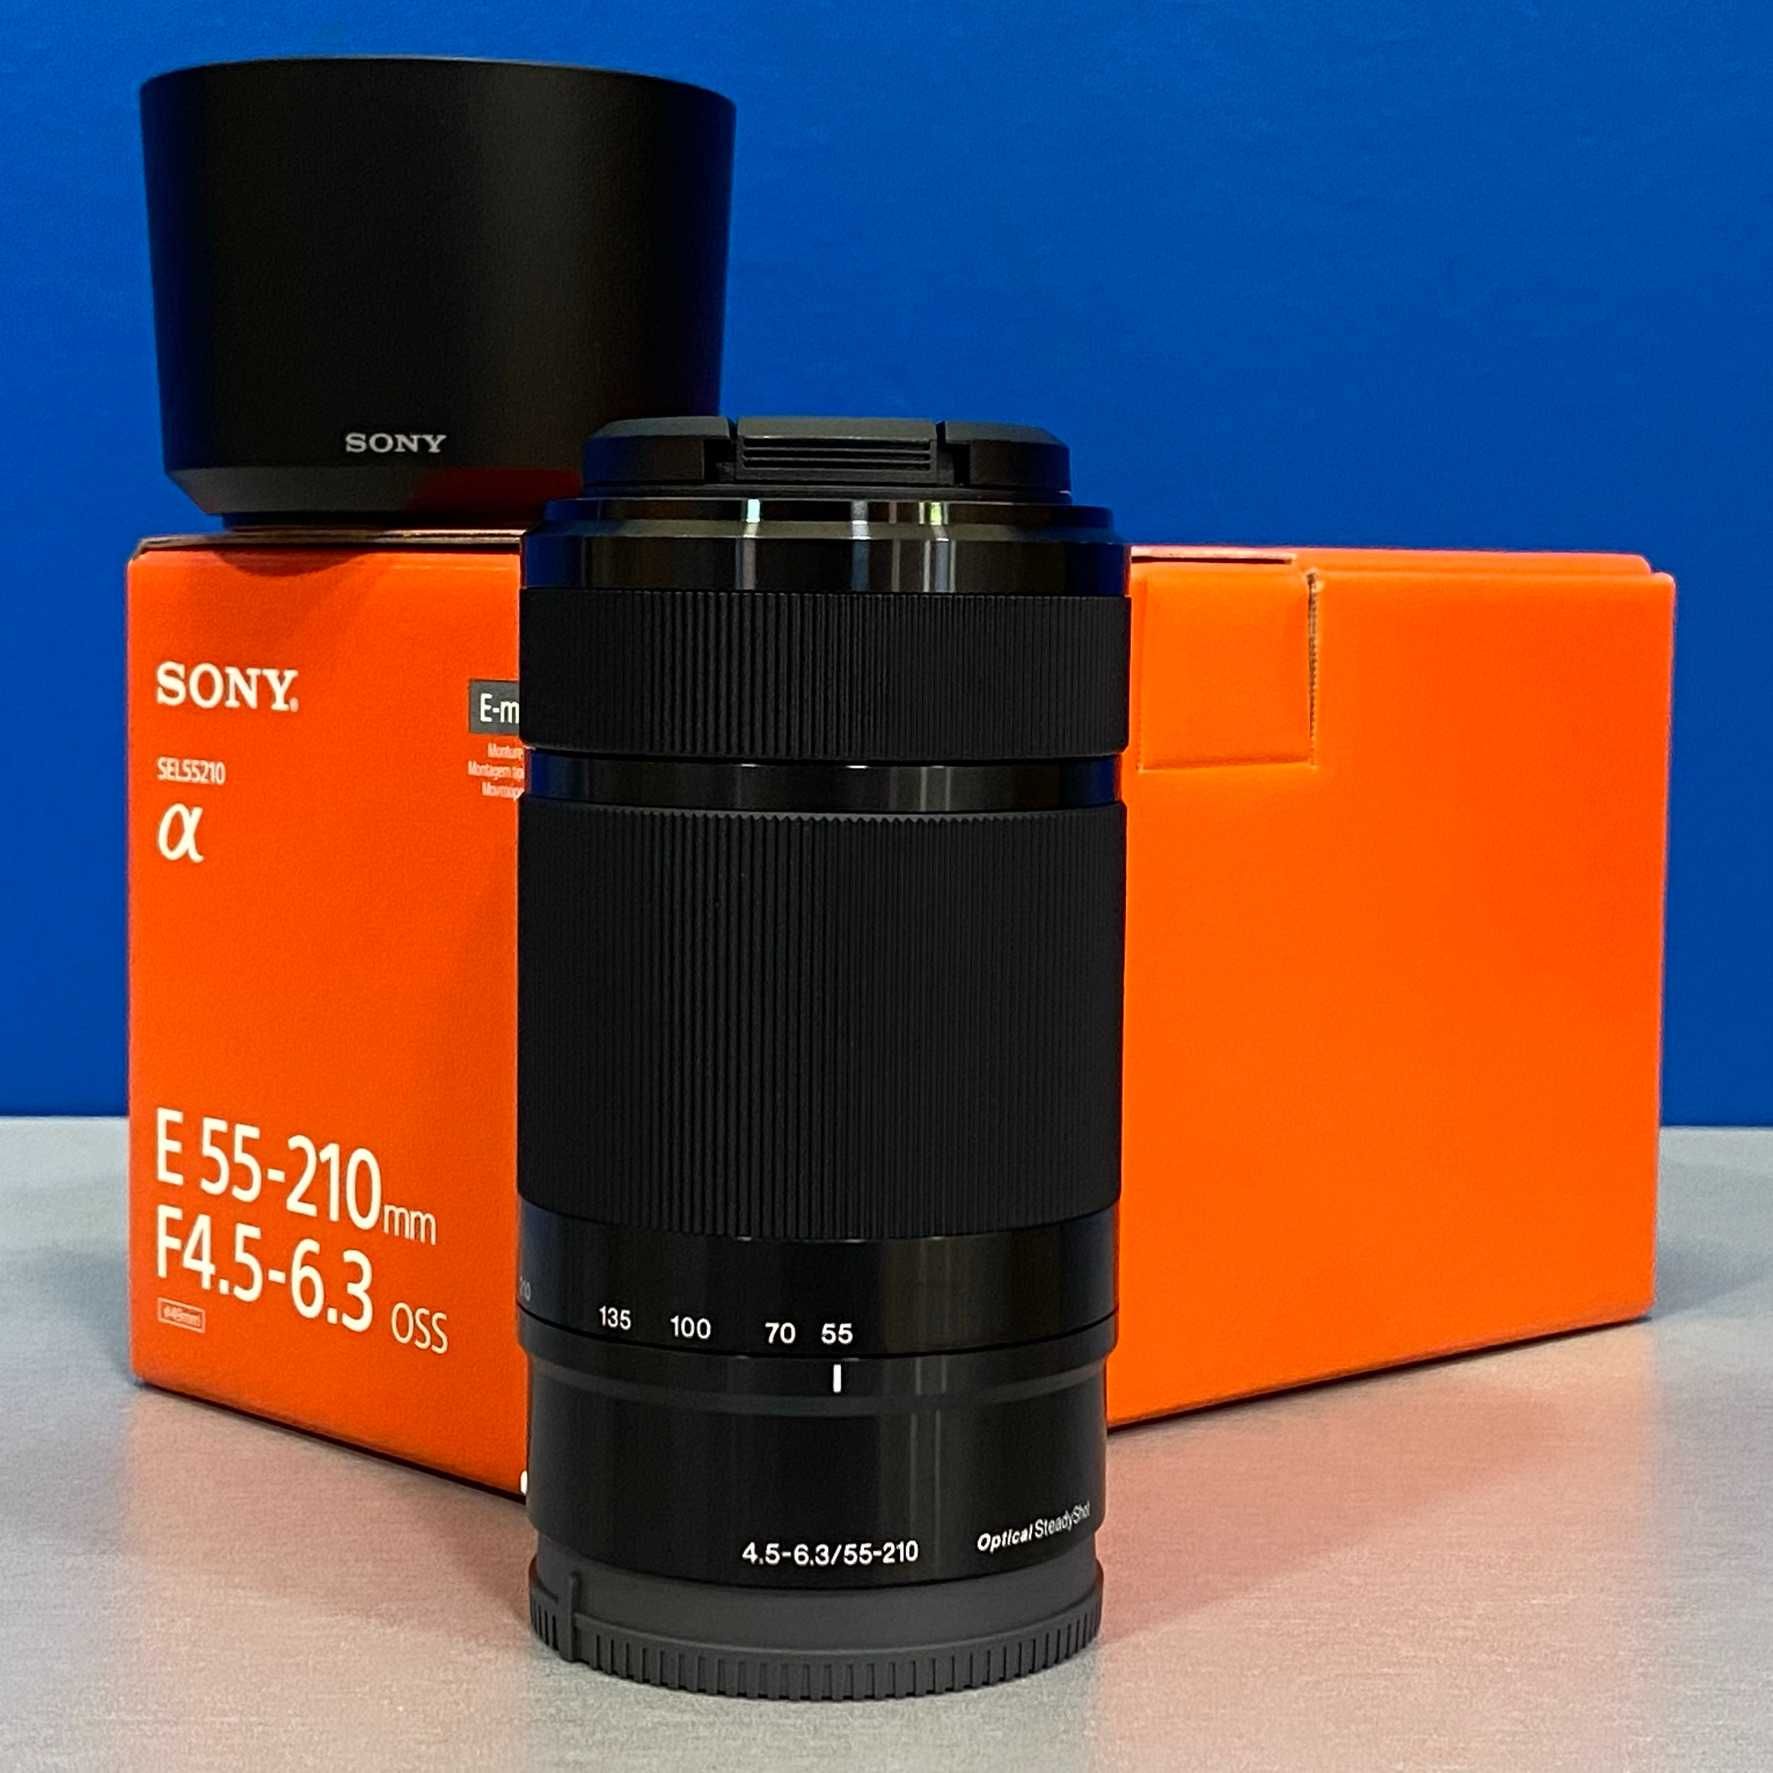 Sony E 55-210mm f/4.5-6.3 OSS - NOVA - 2 ANOS DE GARANTIA